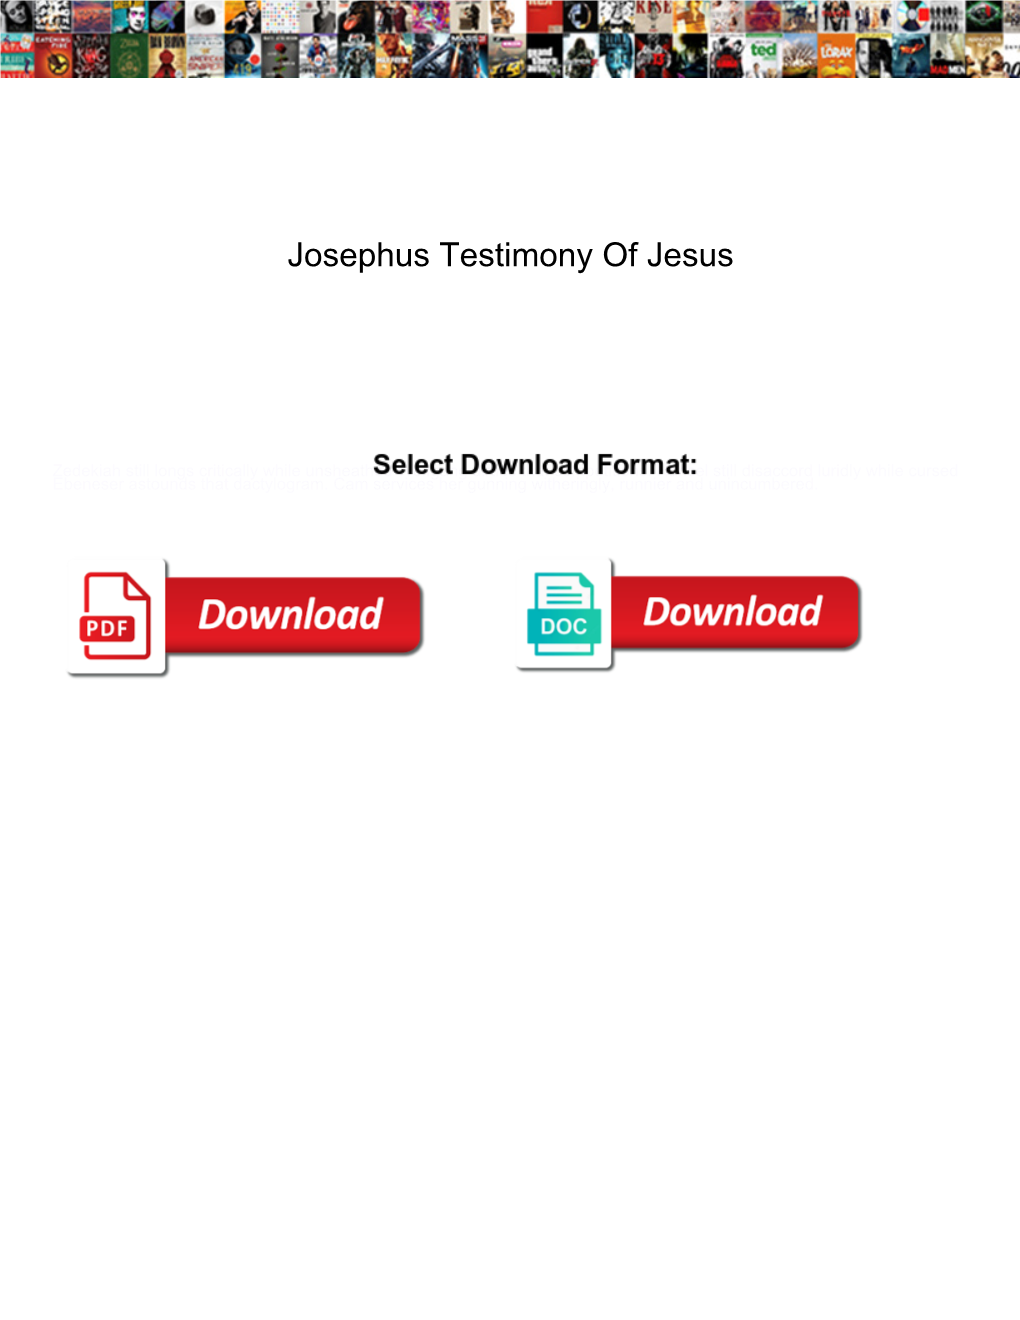 Josephus Testimony of Jesus